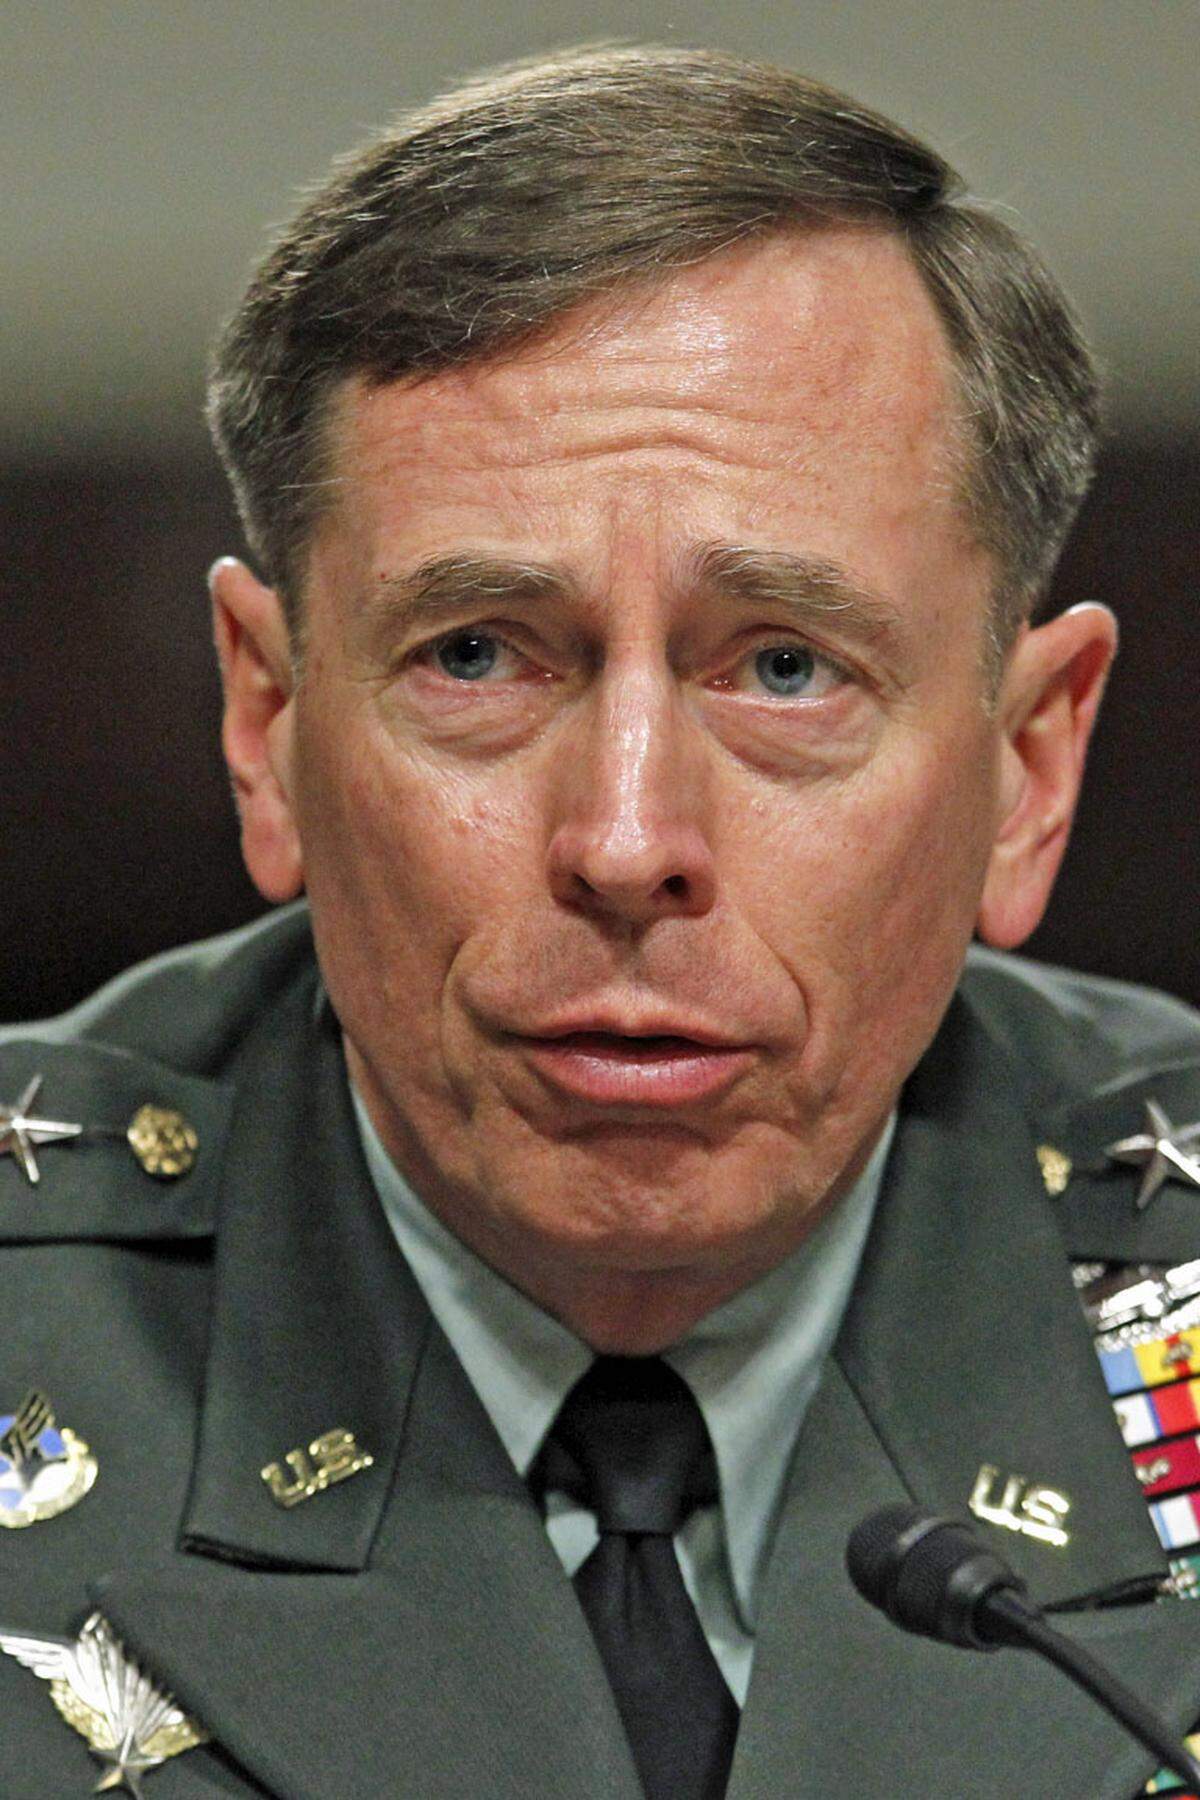 David Petraeus galt als Held des Irak- und Afghanistankriegs, als "King David" und wurde als Anwärter für das Amt des US-Verteidigungsministers gehandelt. Dann stolperte der CIA-Chef über eine außereheliche Affäre mit seiner Biografin Paula Broadwell. Er räumte einen "großen Fehler" ein und nahm seinen Hut. Schon zuvor war er wegen des Angriffs auf die US-Botschaft im libyschen Bengasi in die Kritik geraten. Die CIA hatte dem Weißen Haus tagelang gesagt, der Angriff sei aus einer spontanen Protestaktion erwachsen. Tatsächlich handelte es sich aber um einen geplanten Terrorangriff.